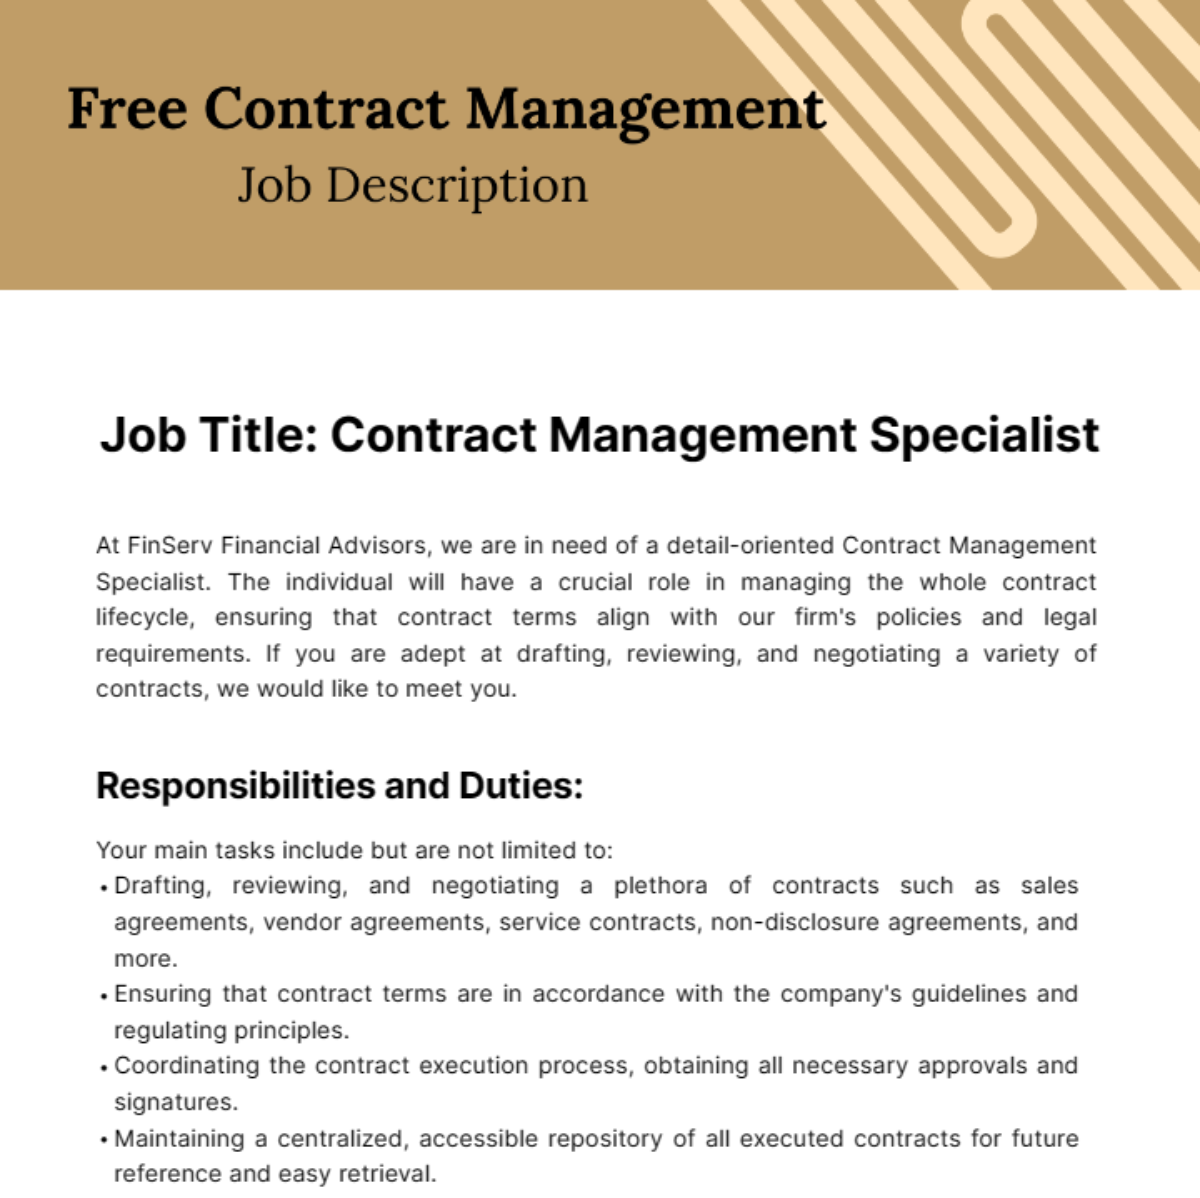 Free Contract Management Job Description Template